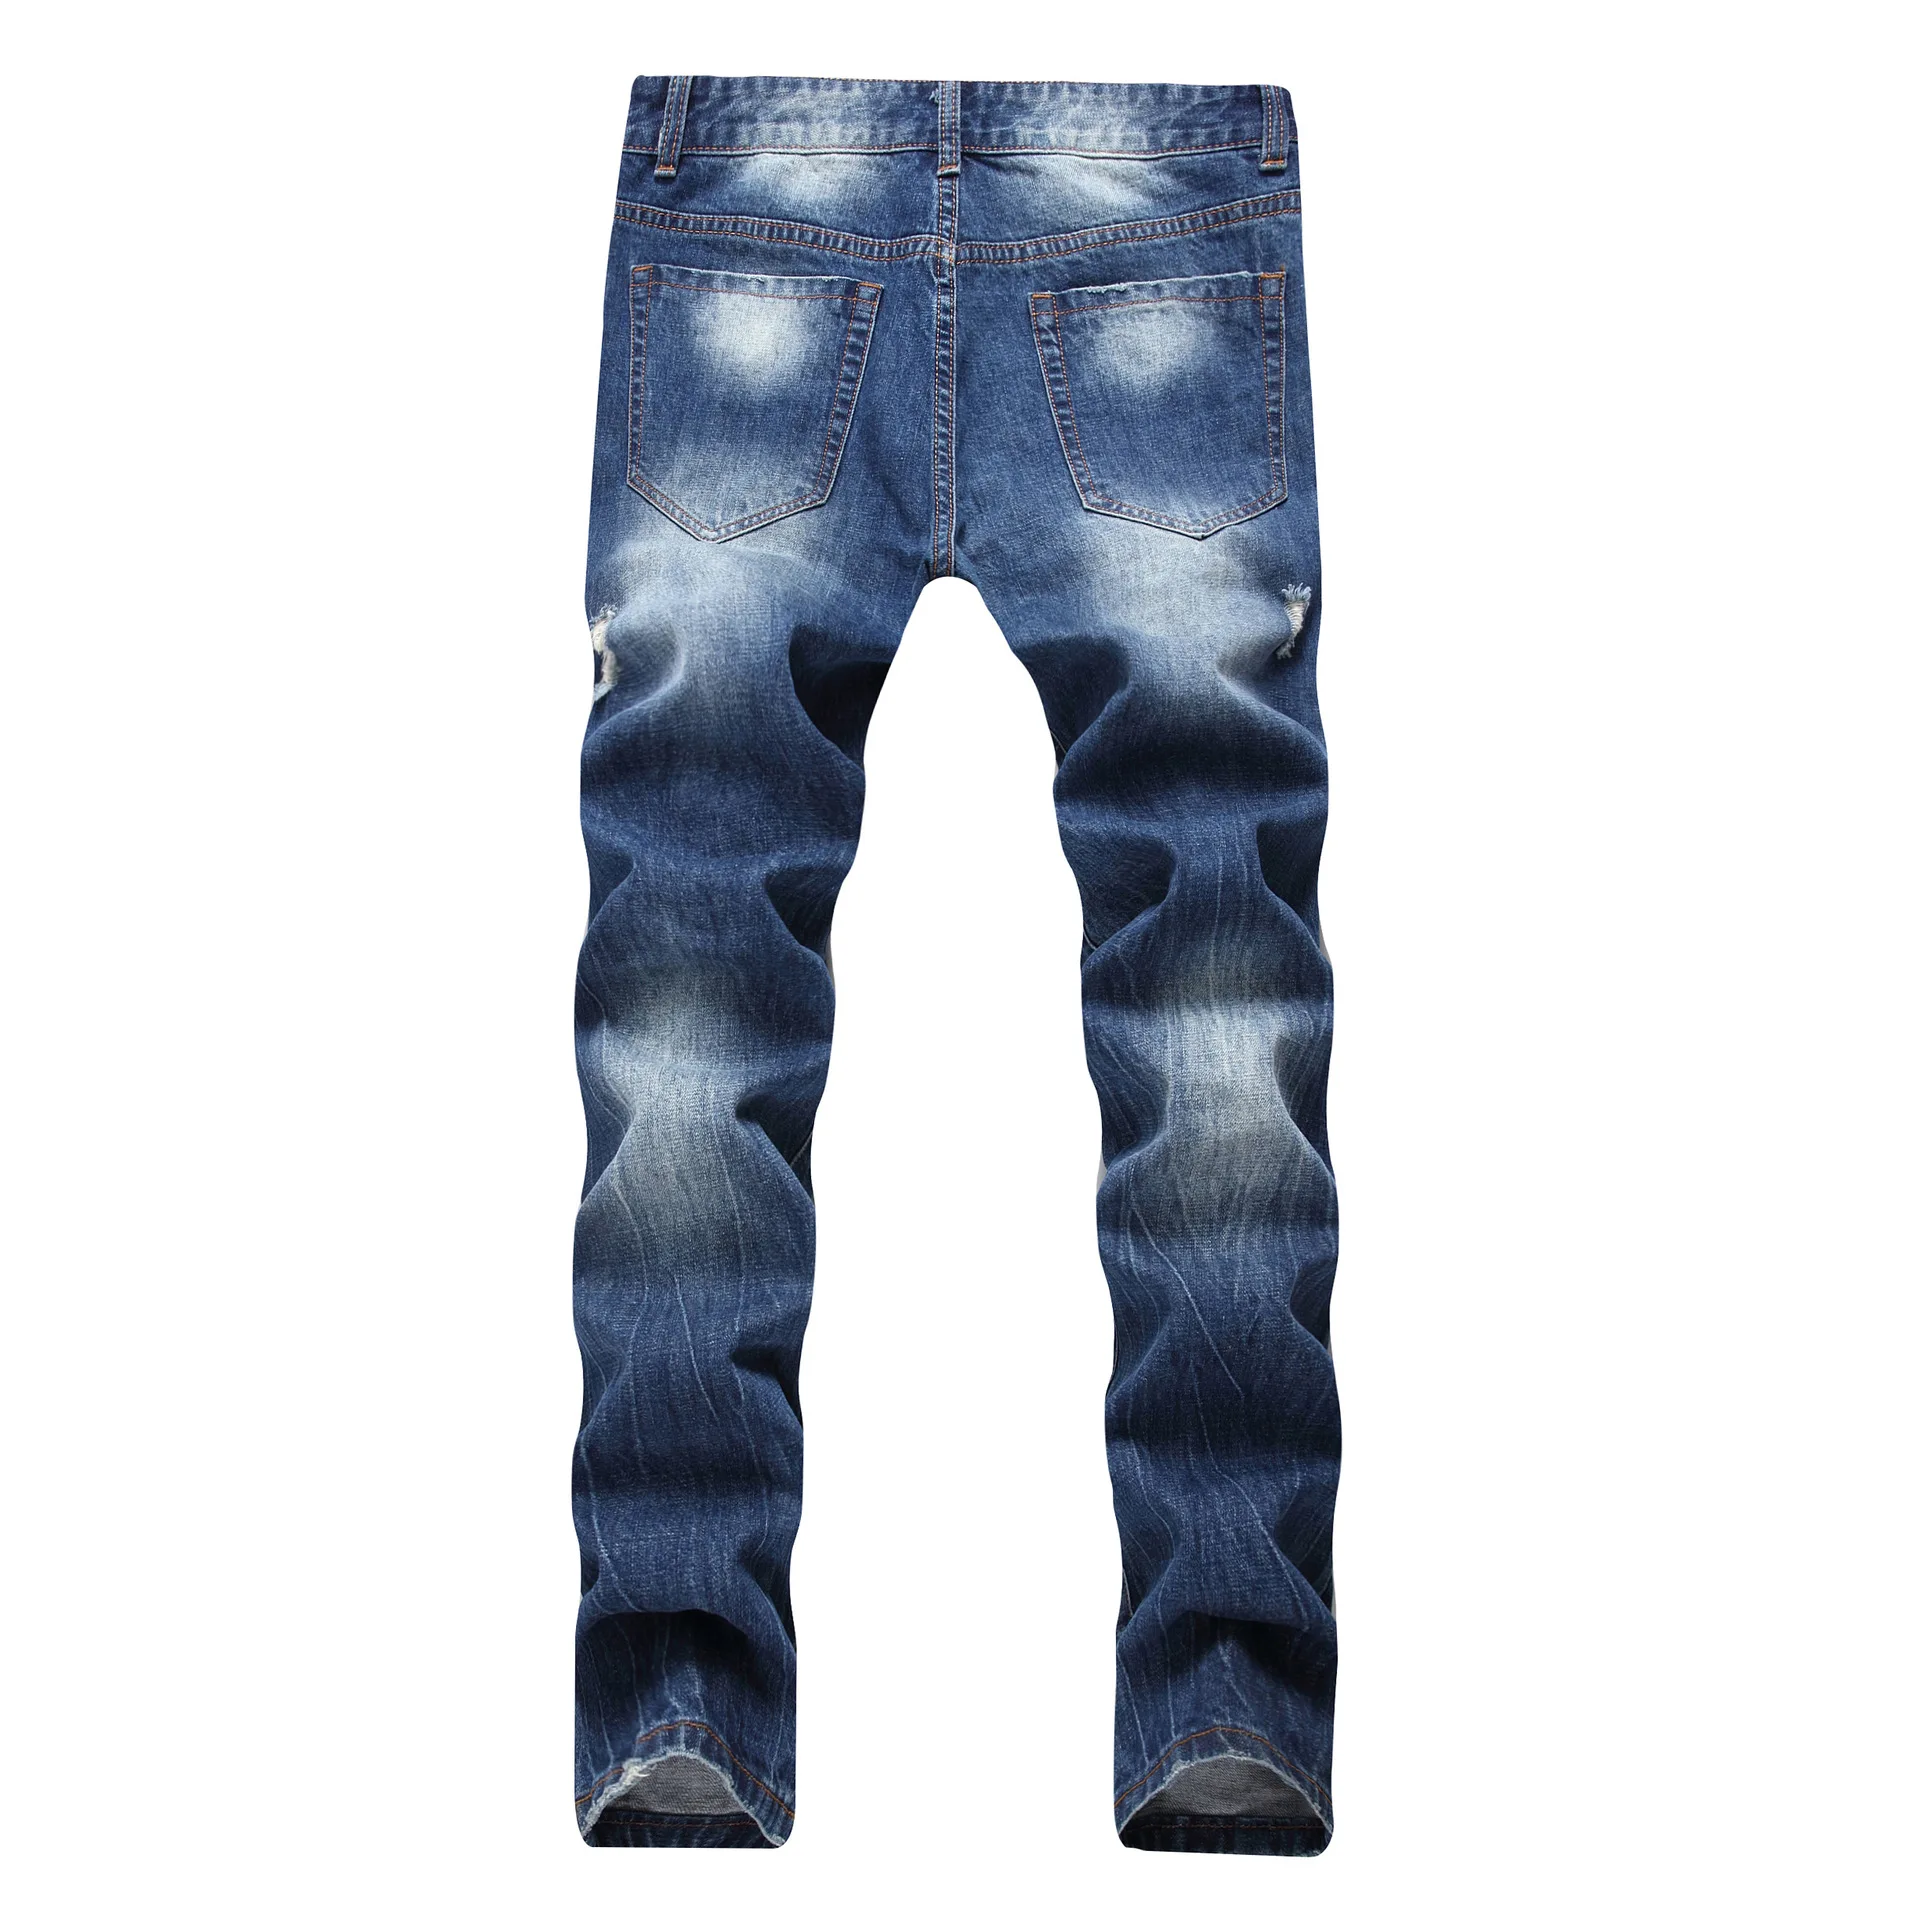 Gersri мужские джинсы модная дизайнерская брендовая легкая синяя прямая обтягивающая дырка, длинные штаны рваные джинсы мужские брюки из